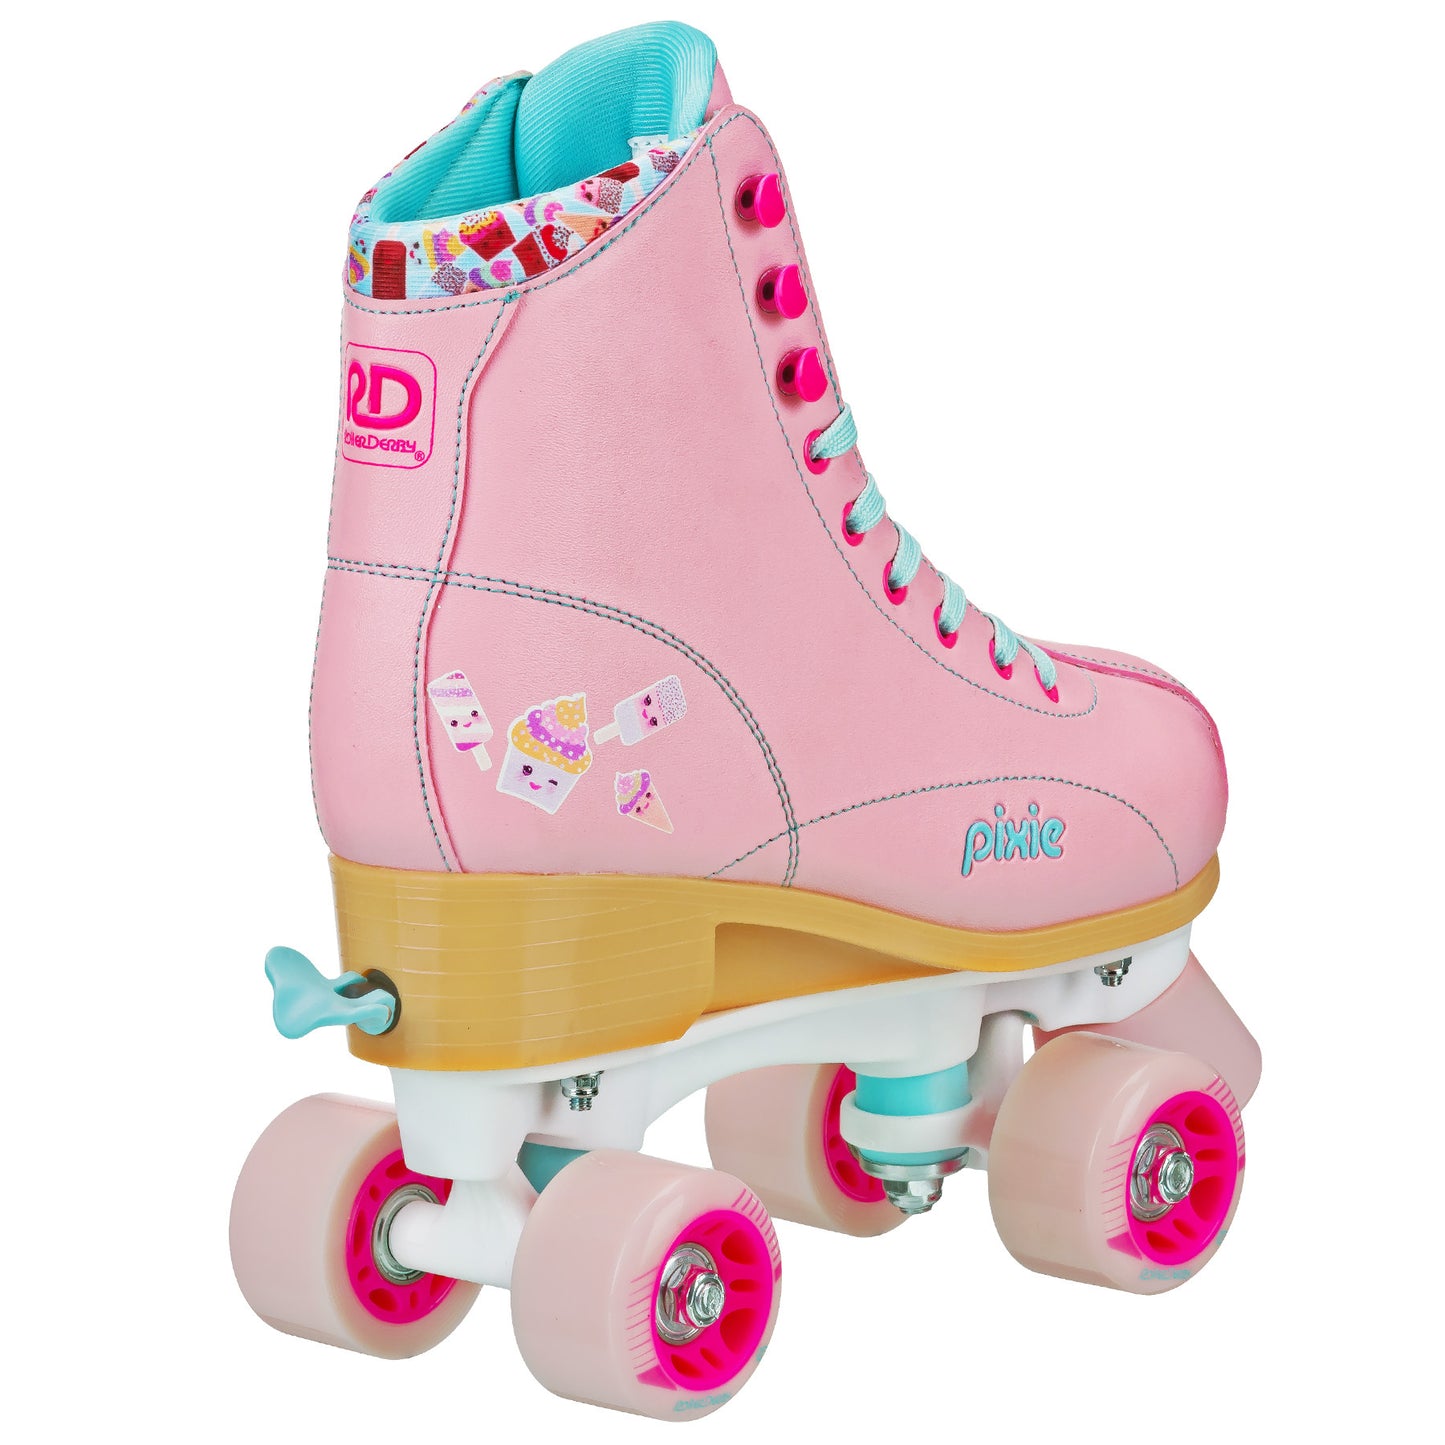 Pixie Cake Adjustable Girl's Roller Skates